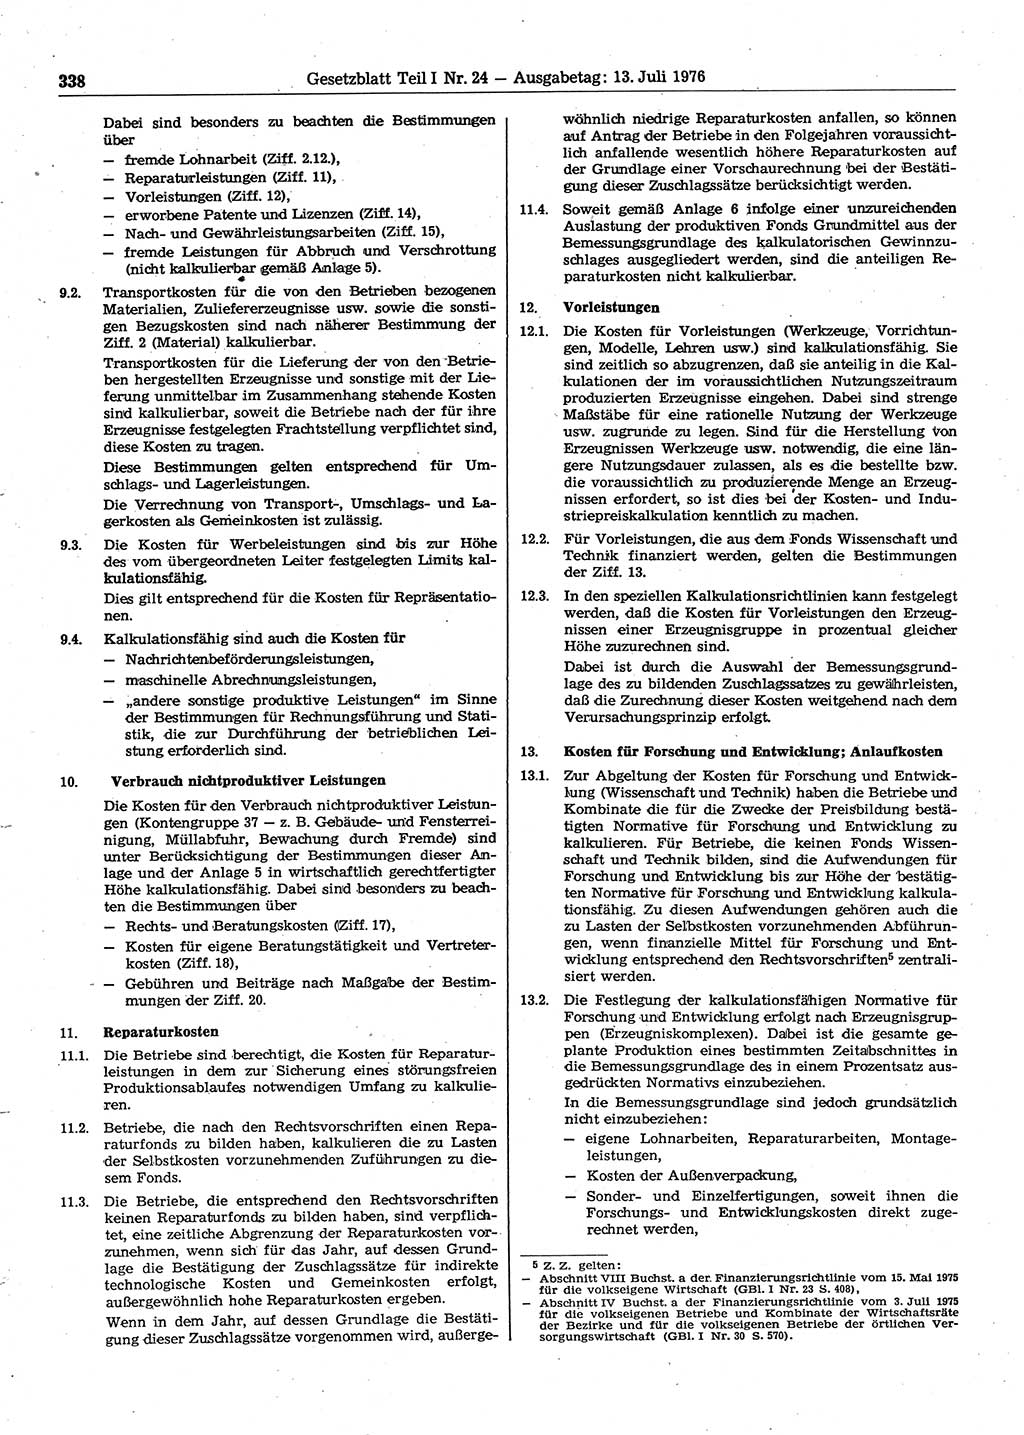 Gesetzblatt (GBl.) der Deutschen Demokratischen Republik (DDR) Teil Ⅰ 1976, Seite 338 (GBl. DDR Ⅰ 1976, S. 338)